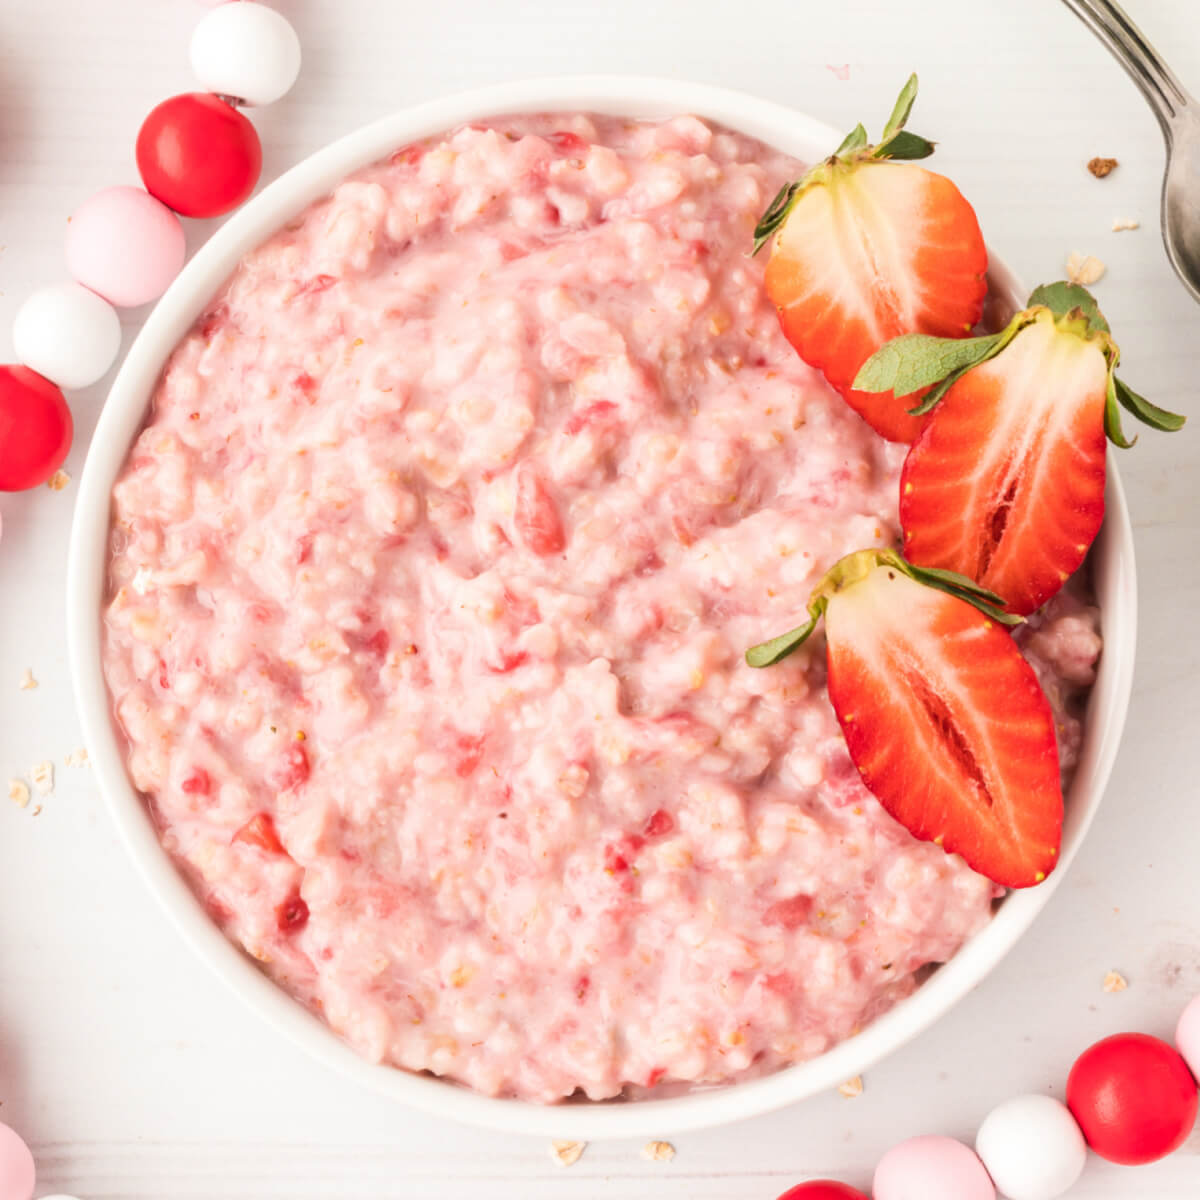 Strawberries and Cream Oatmeal - two raspberries